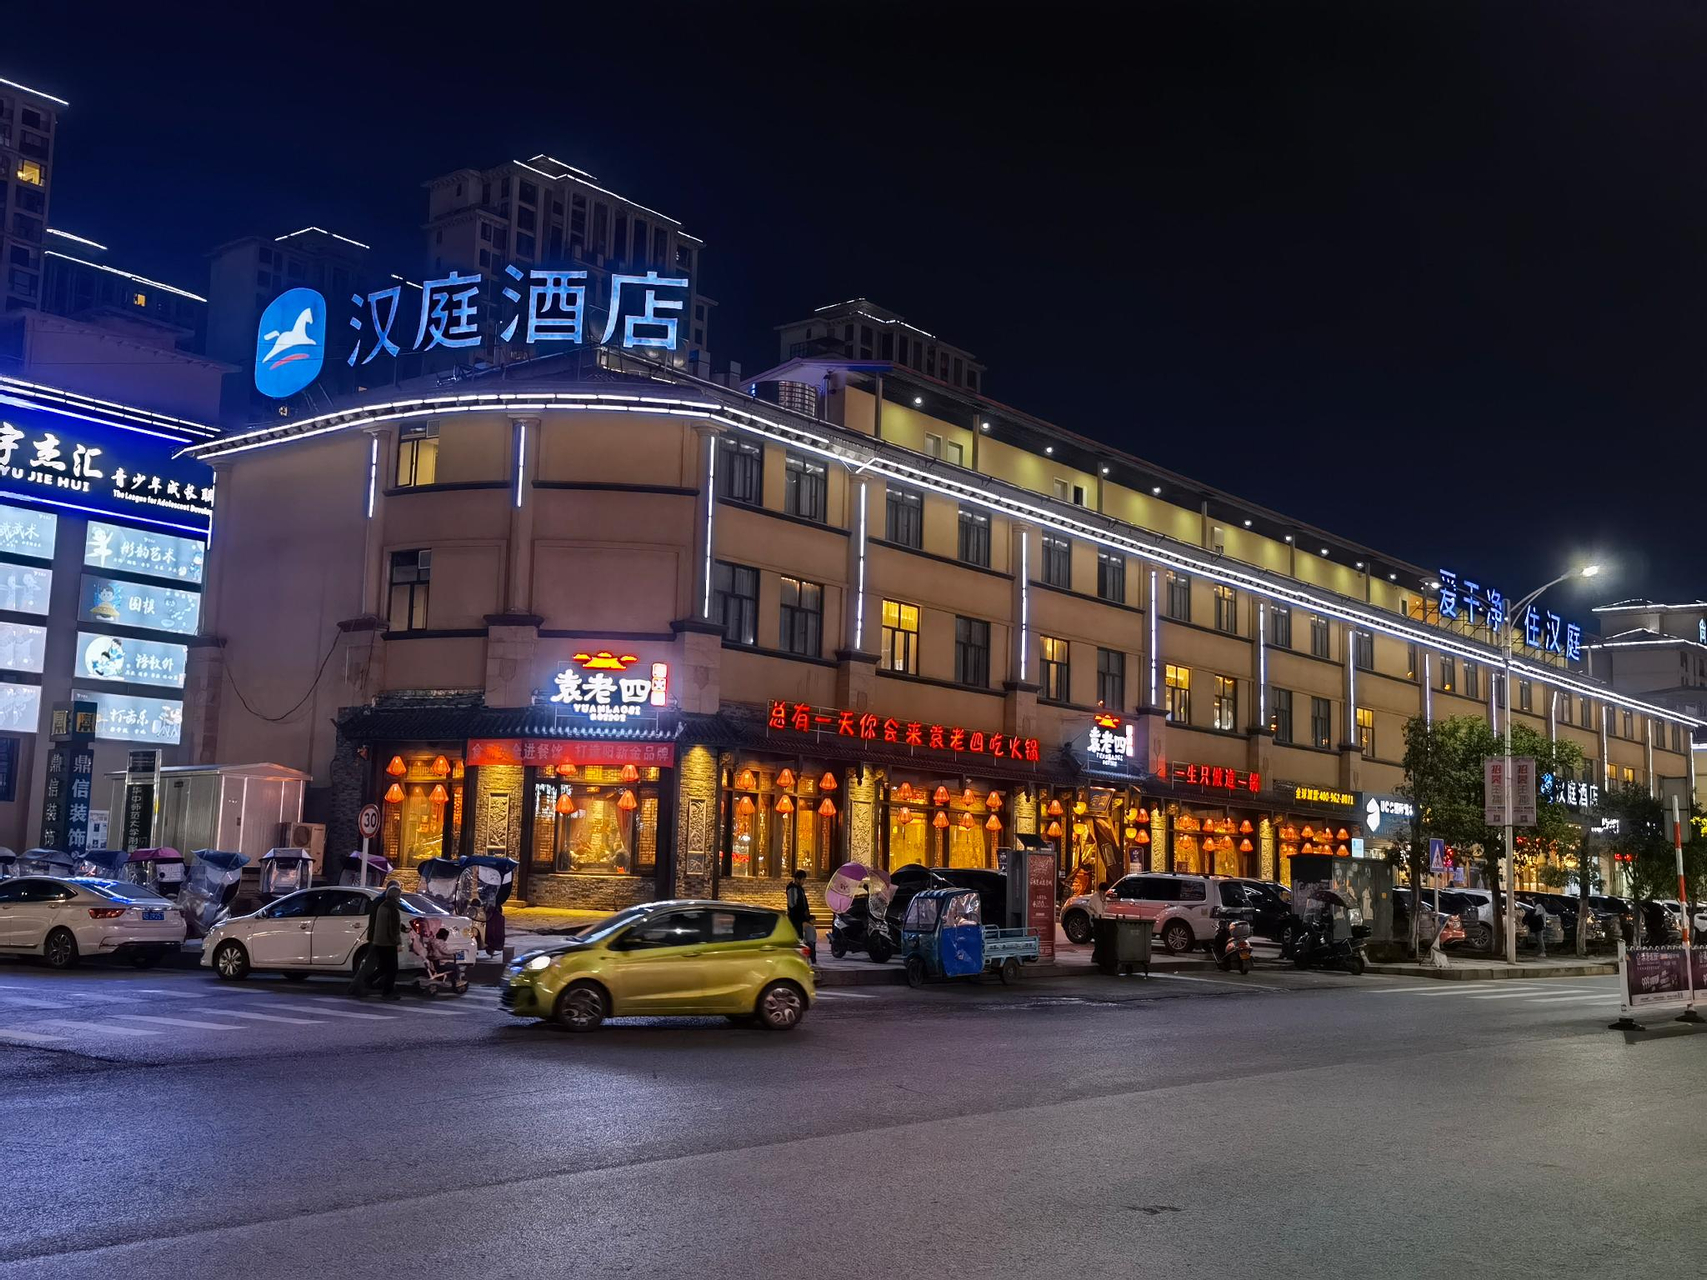 Others 4, Hanting Hotel Huangshi Yangxin Mingyue Bay, Huangshi